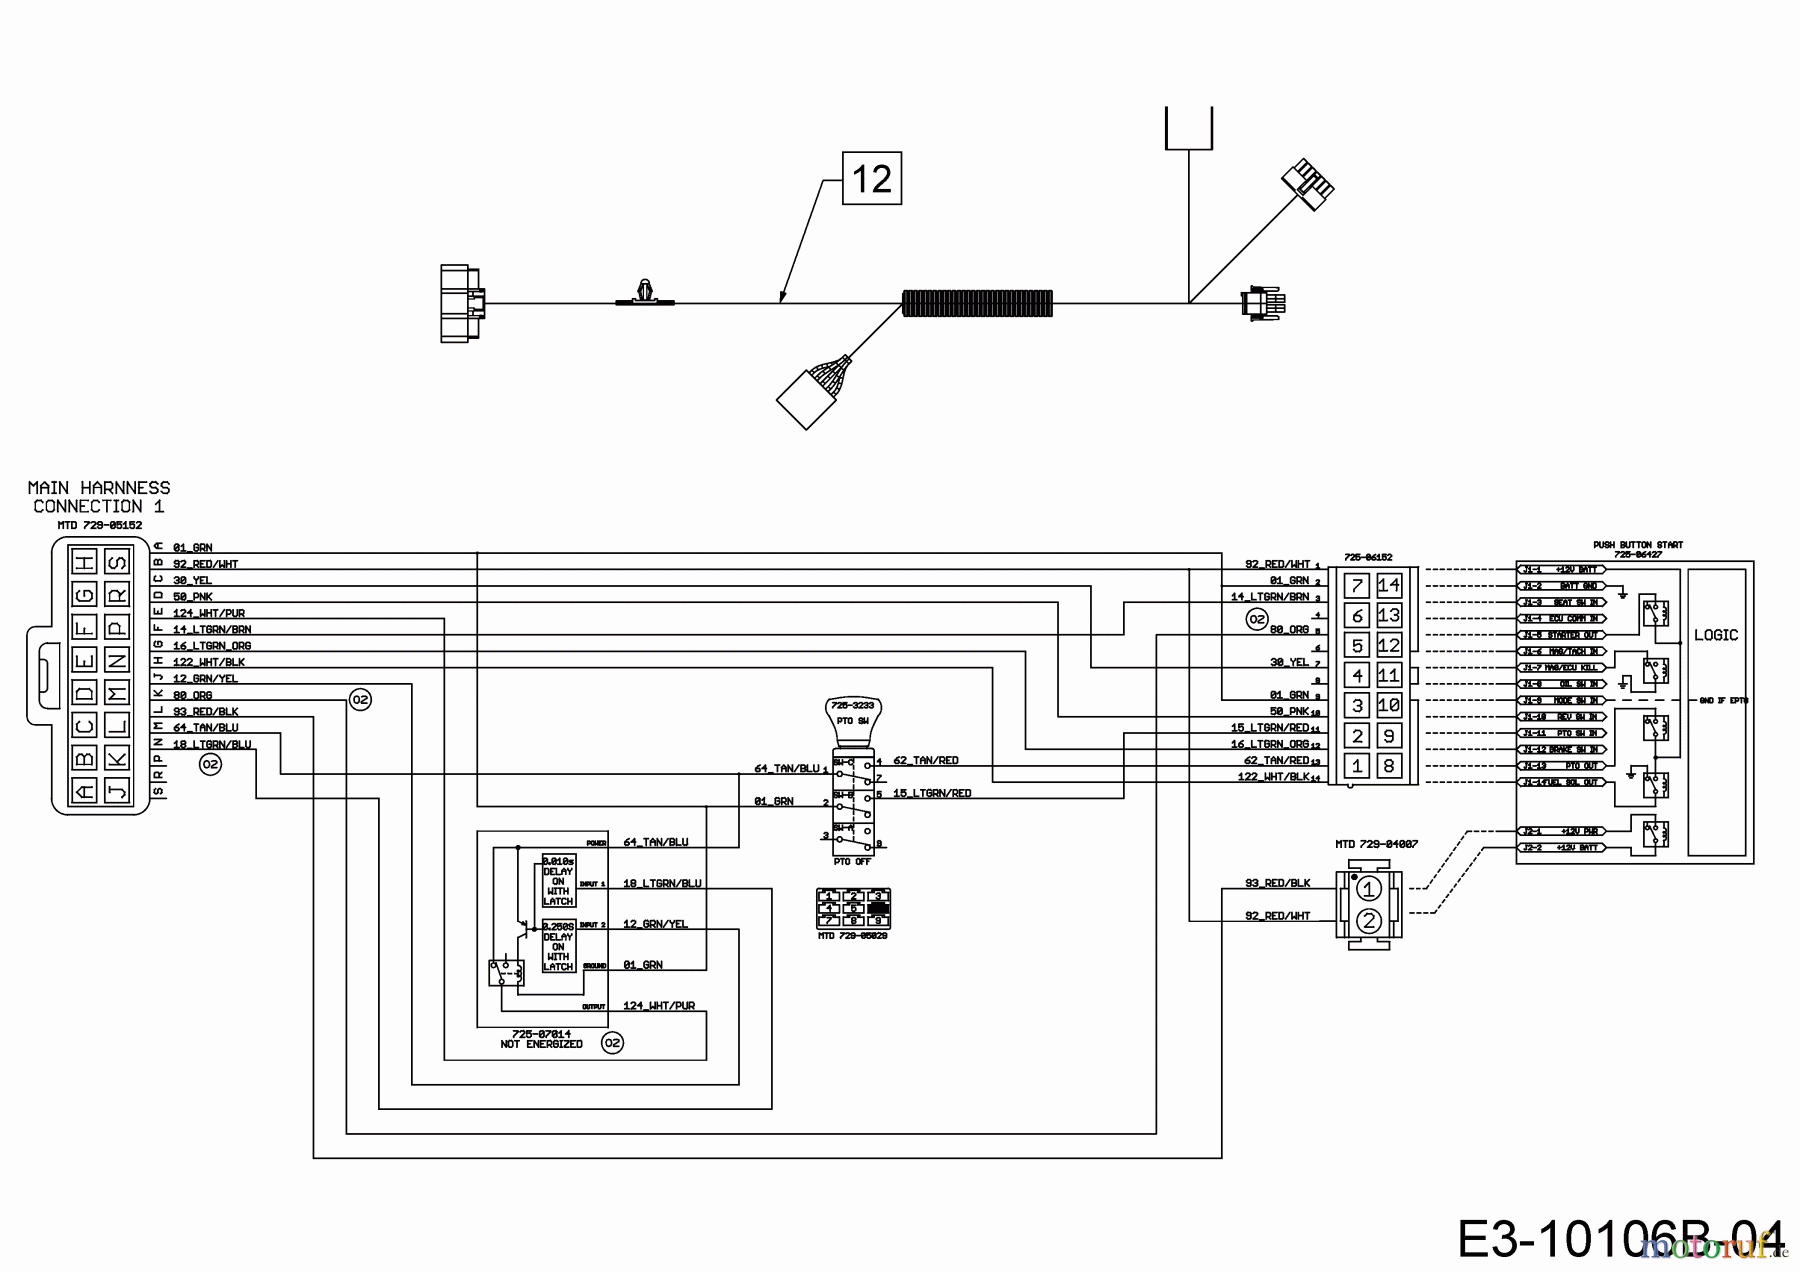  WOLF-Garten Expert Lawn tractors 106.185 H 13BLA1VR650  (2018) Wiring diagram dashboard